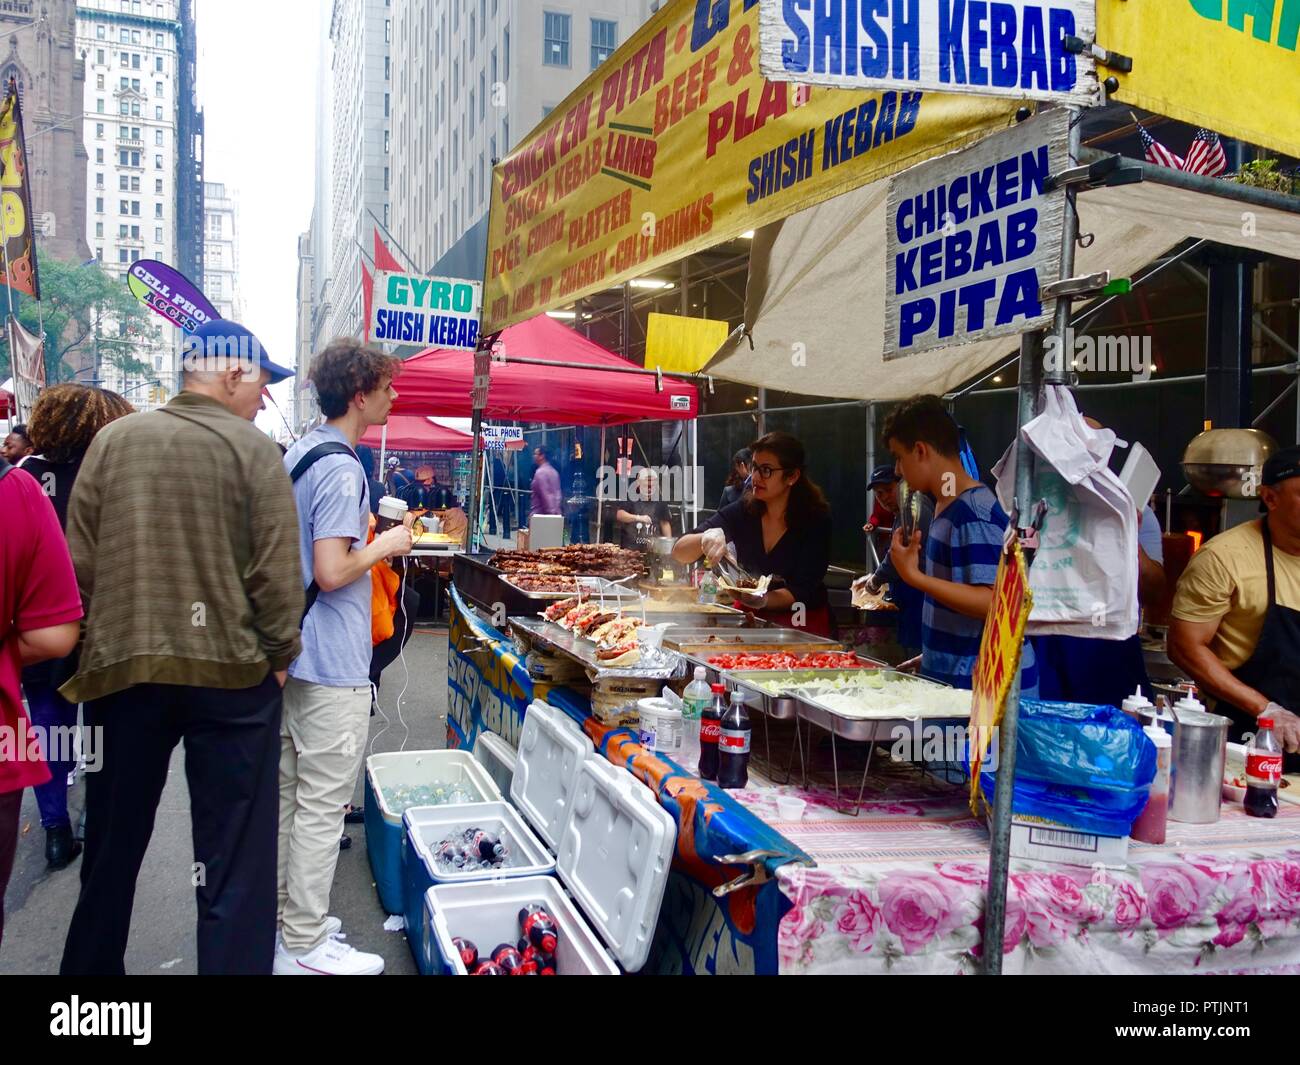 Shish Kebab En Platos Desechables. Carne Frita En Platos De Plástico Fotos,  retratos, imágenes y fotografía de archivo libres de derecho. Image 85485200